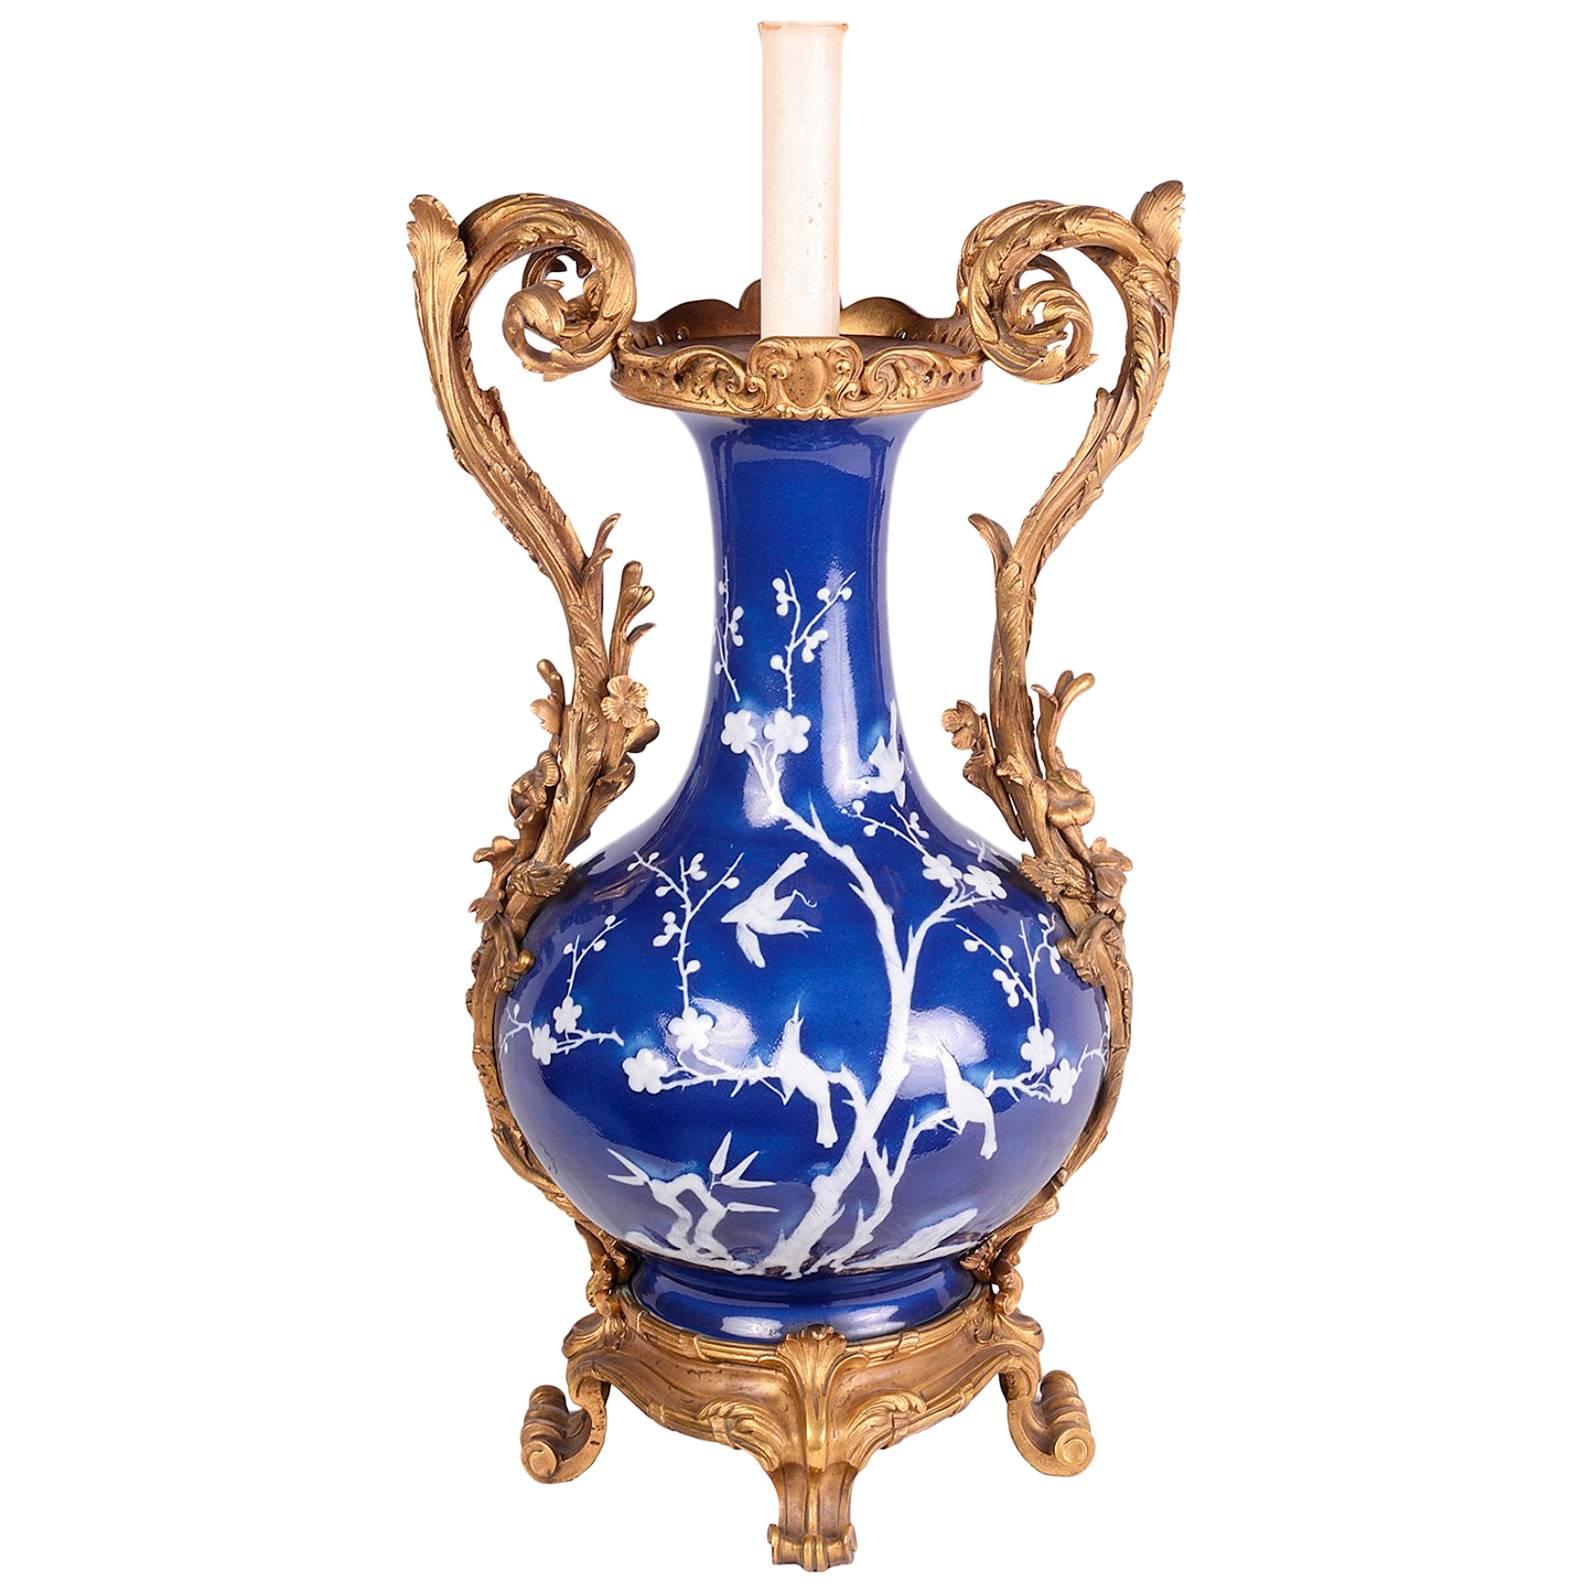 Magnifique vase chinois bleu et blanc, avec des montures et des poignées en bronze doré à décor de rinceaux français.
Transformé en lampe.